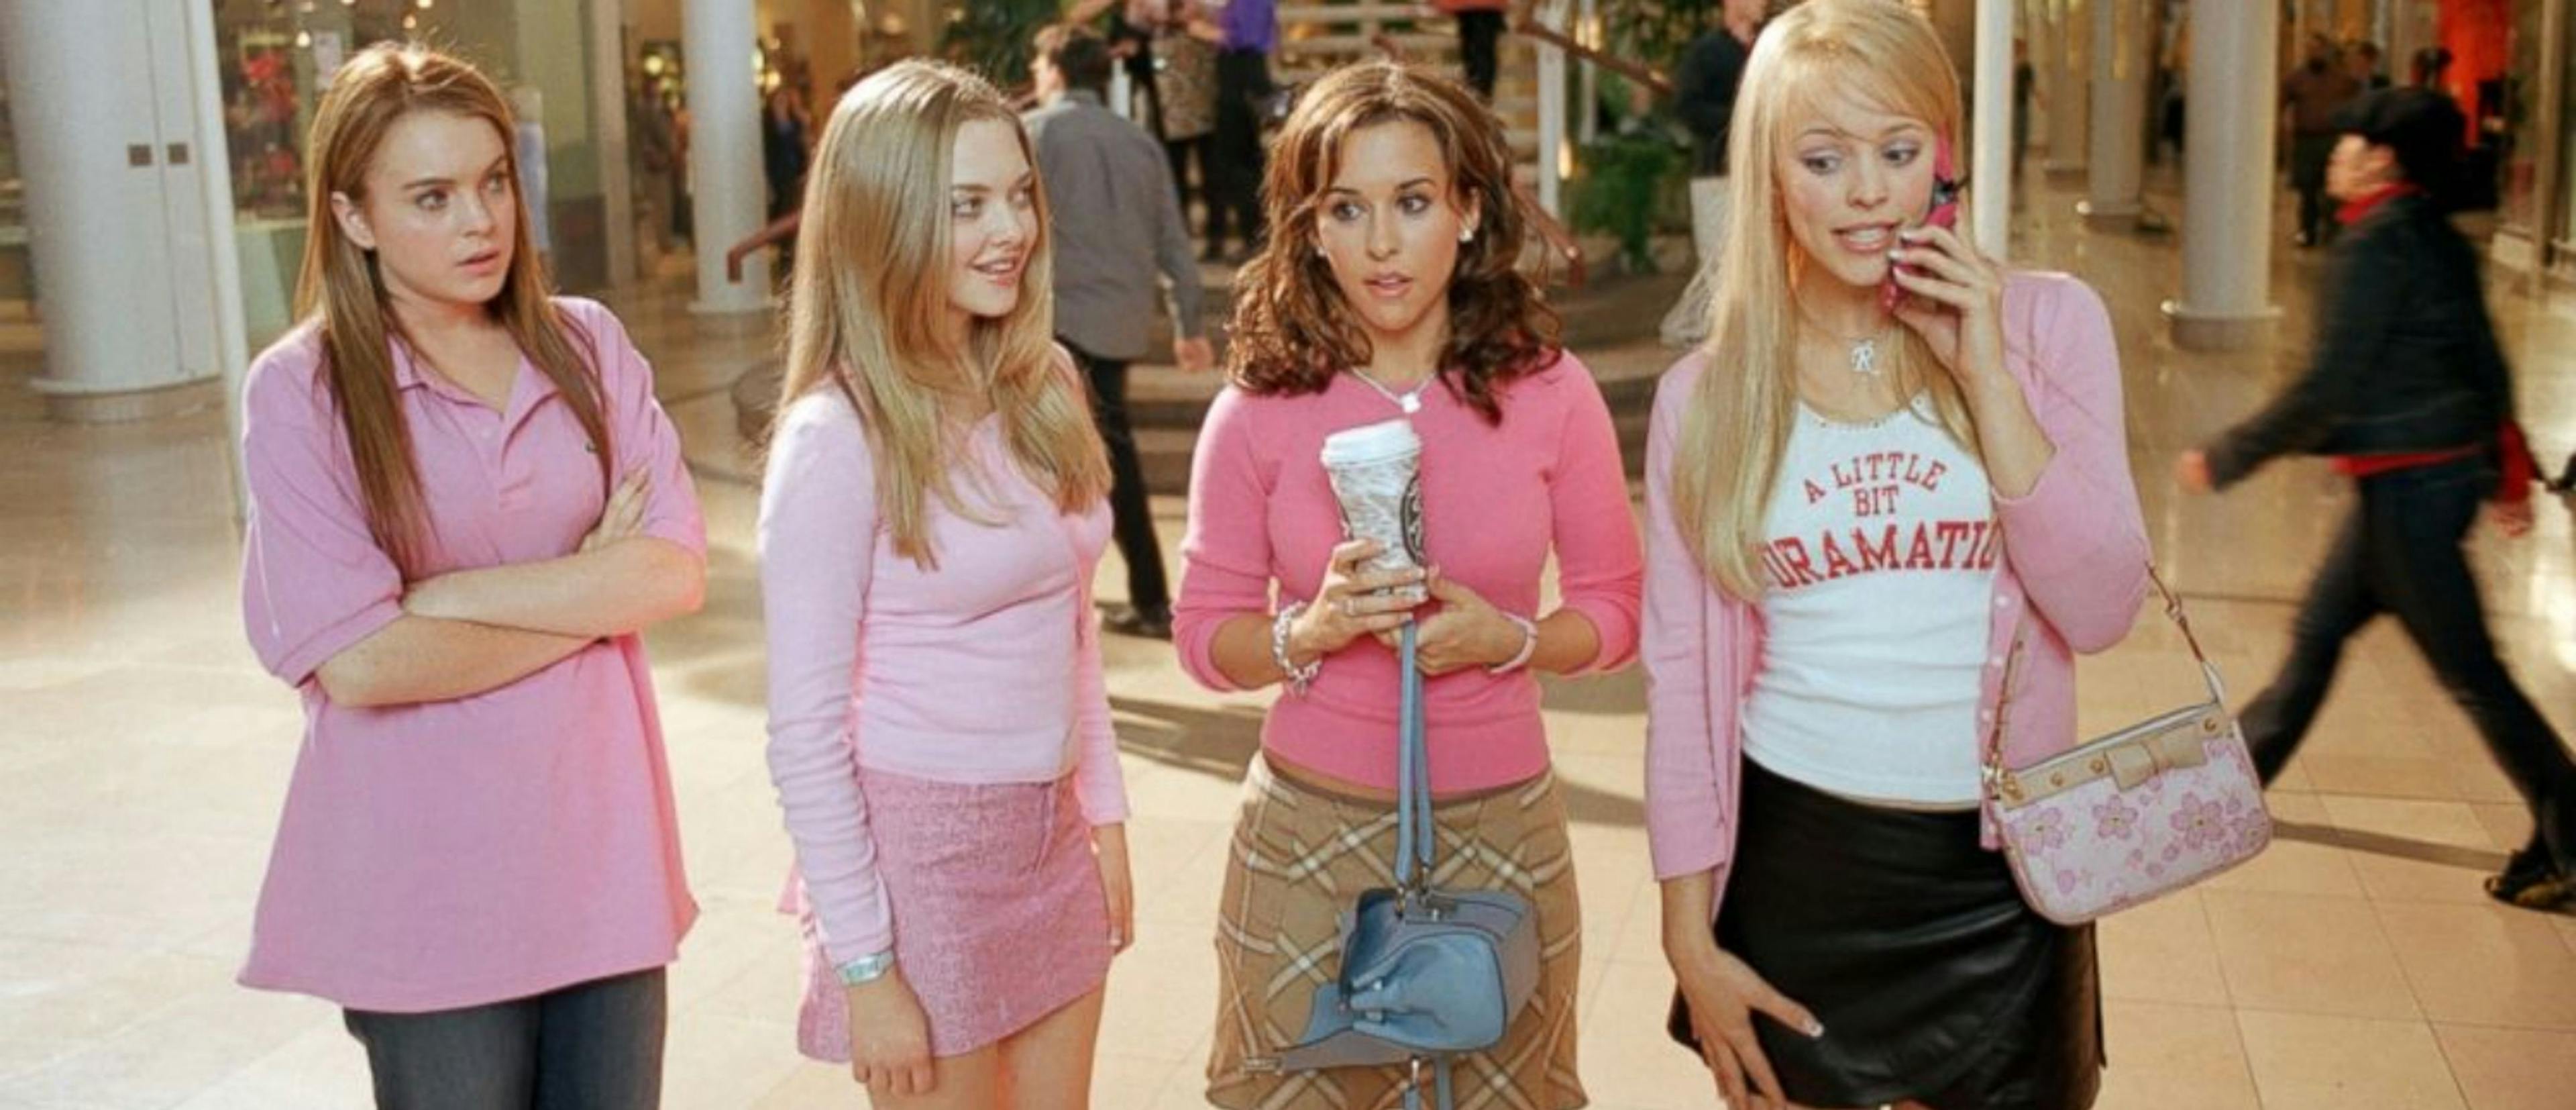 Fotograma de la 'Chicas malas' original con Lindsay Lohan, Amanda Seyfried, Lacey Chabert y Rachel McAdams